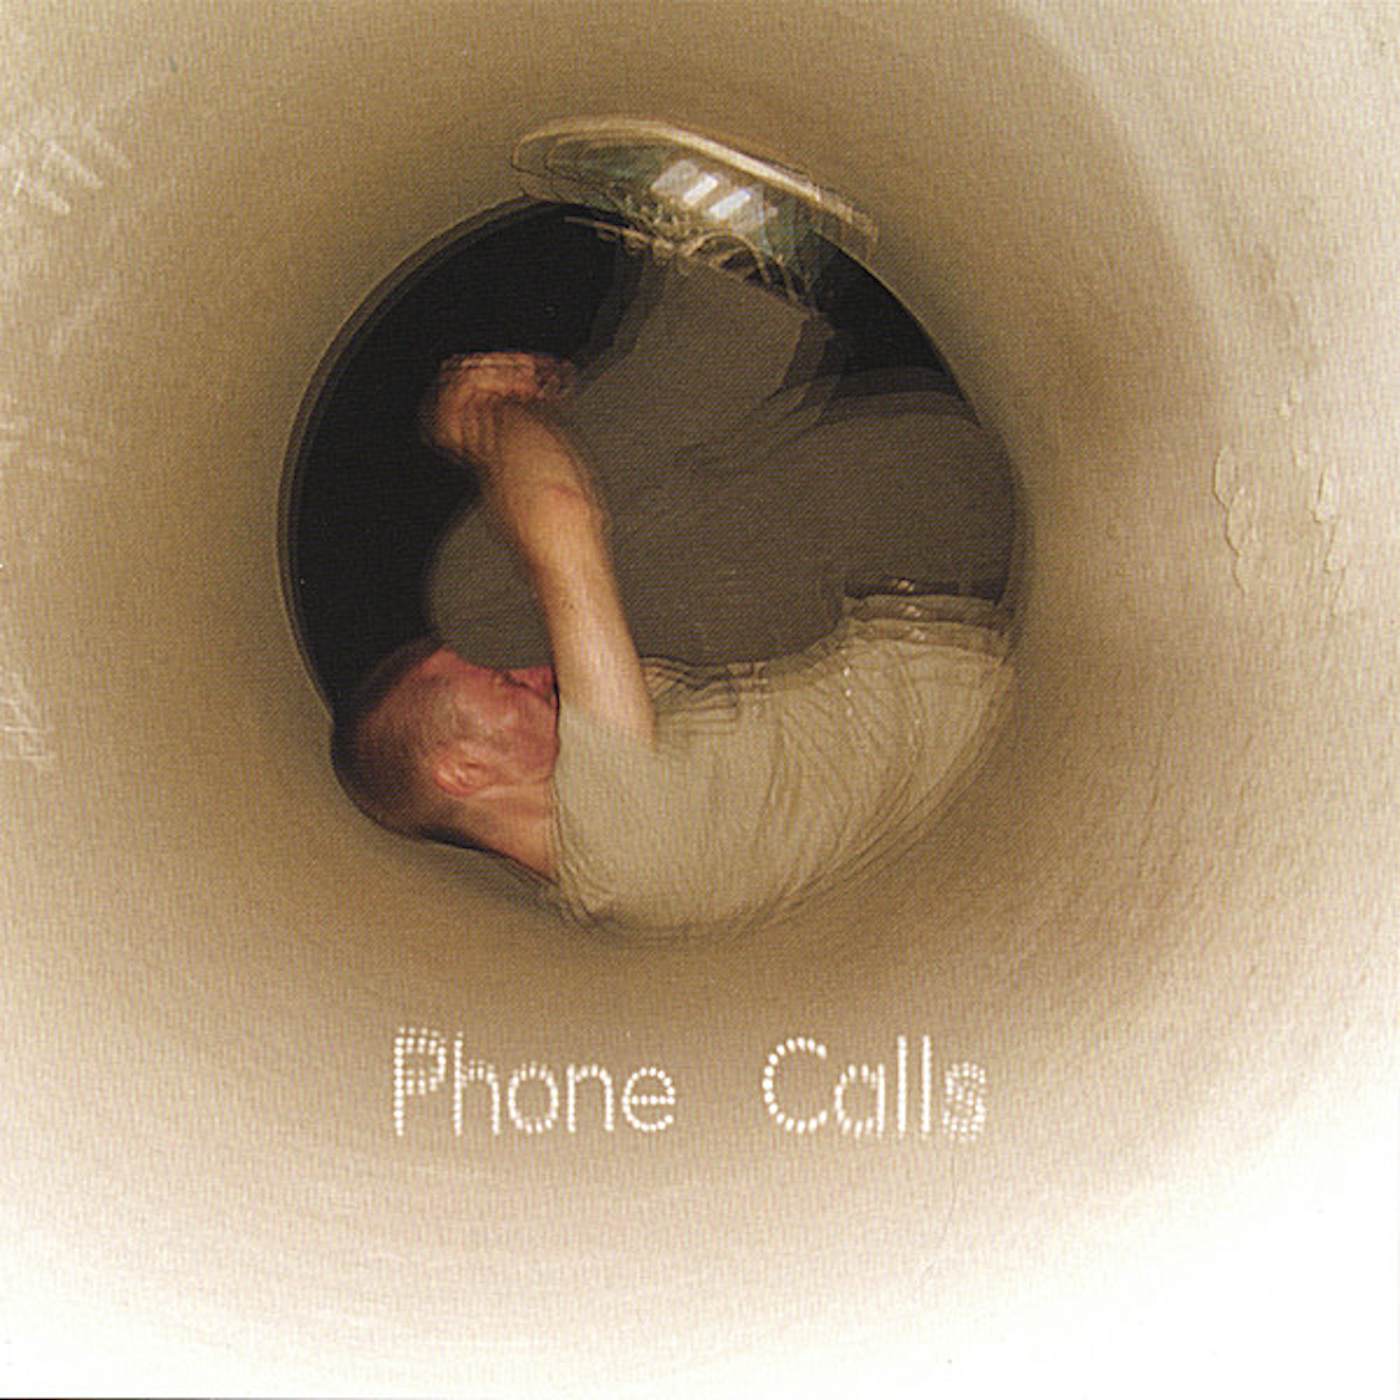 Shivers PHONE CALLS CD